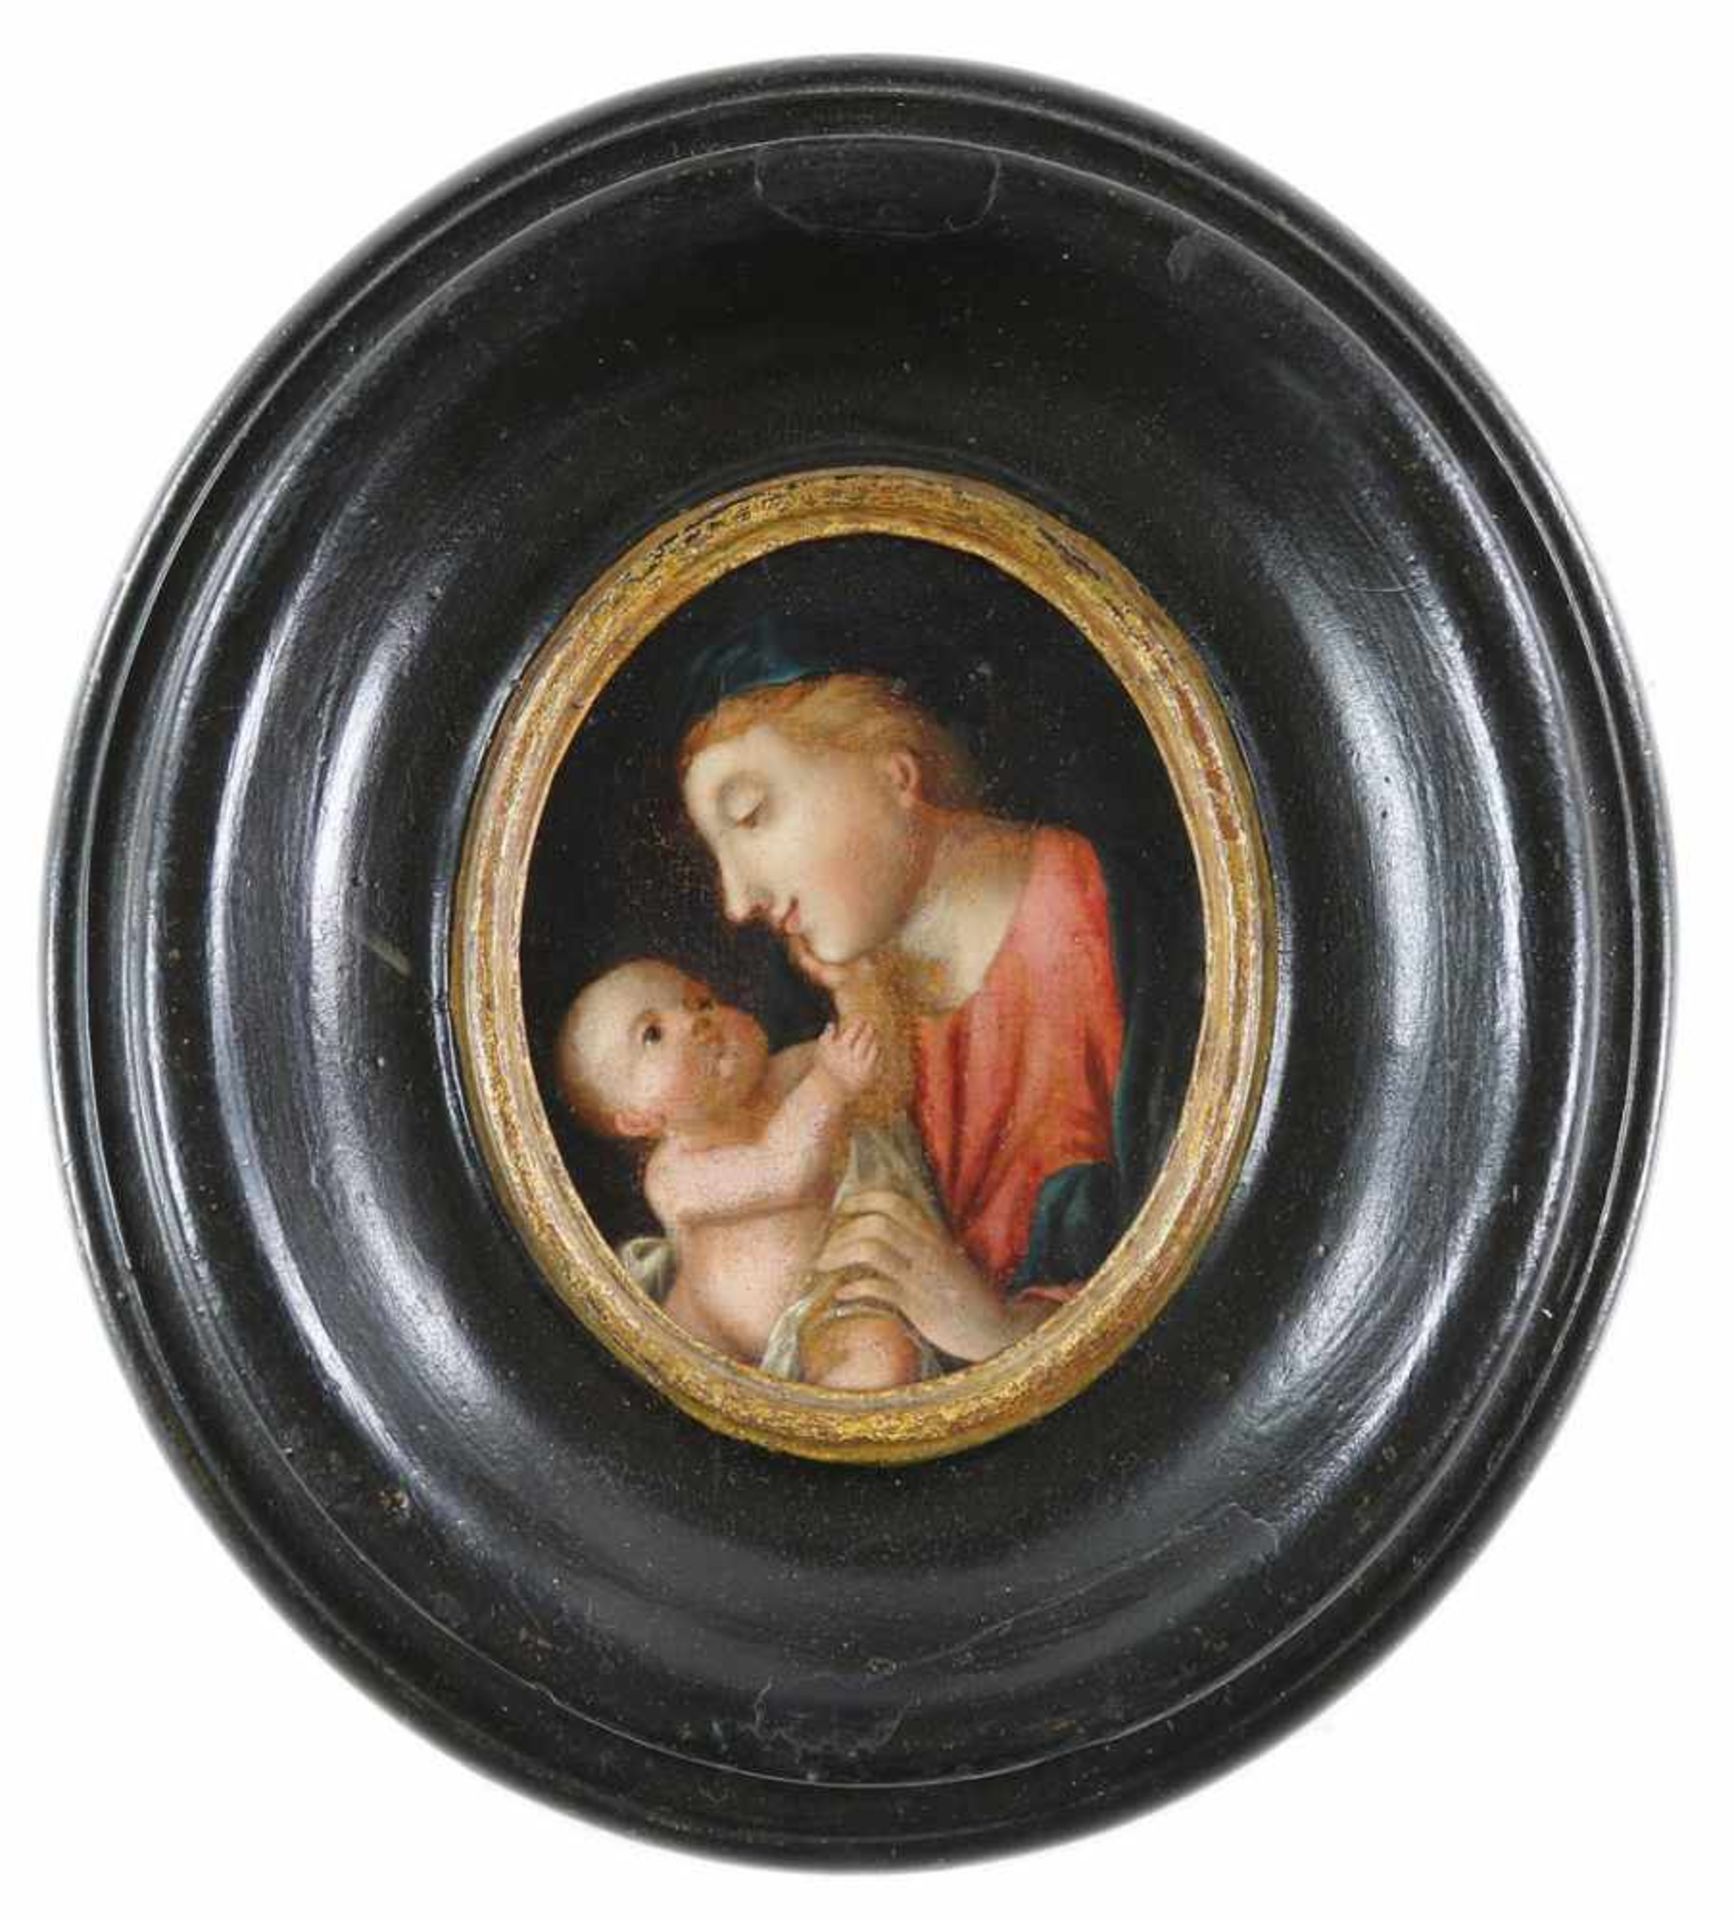 Andachtsbild.Madonna mit Kind. Anonymes Öl auf Holz im Oval, wohl deutsch, 17./18. Jh. Ca. 9,5 x 7,5 - Bild 2 aus 2